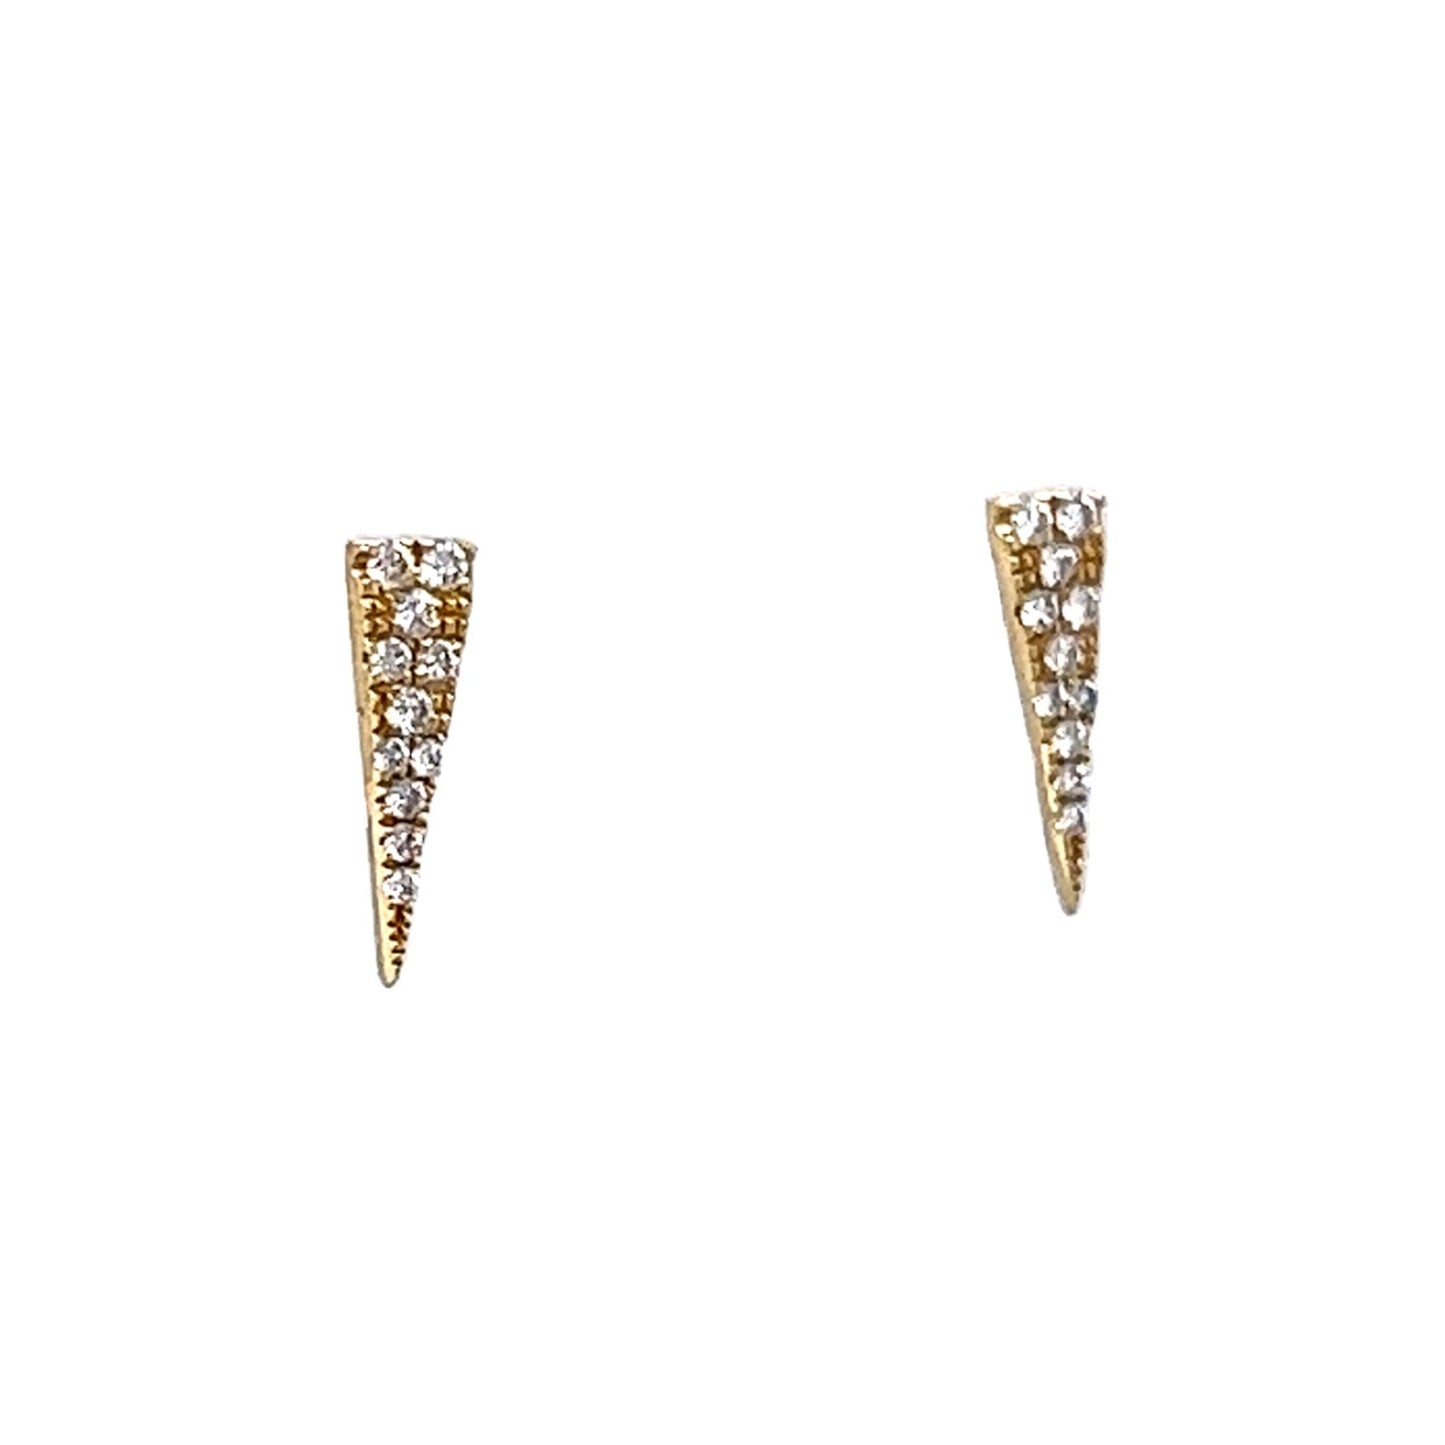 .10 Triangular Diamond Stud Earrings in 14k Yellow Gold